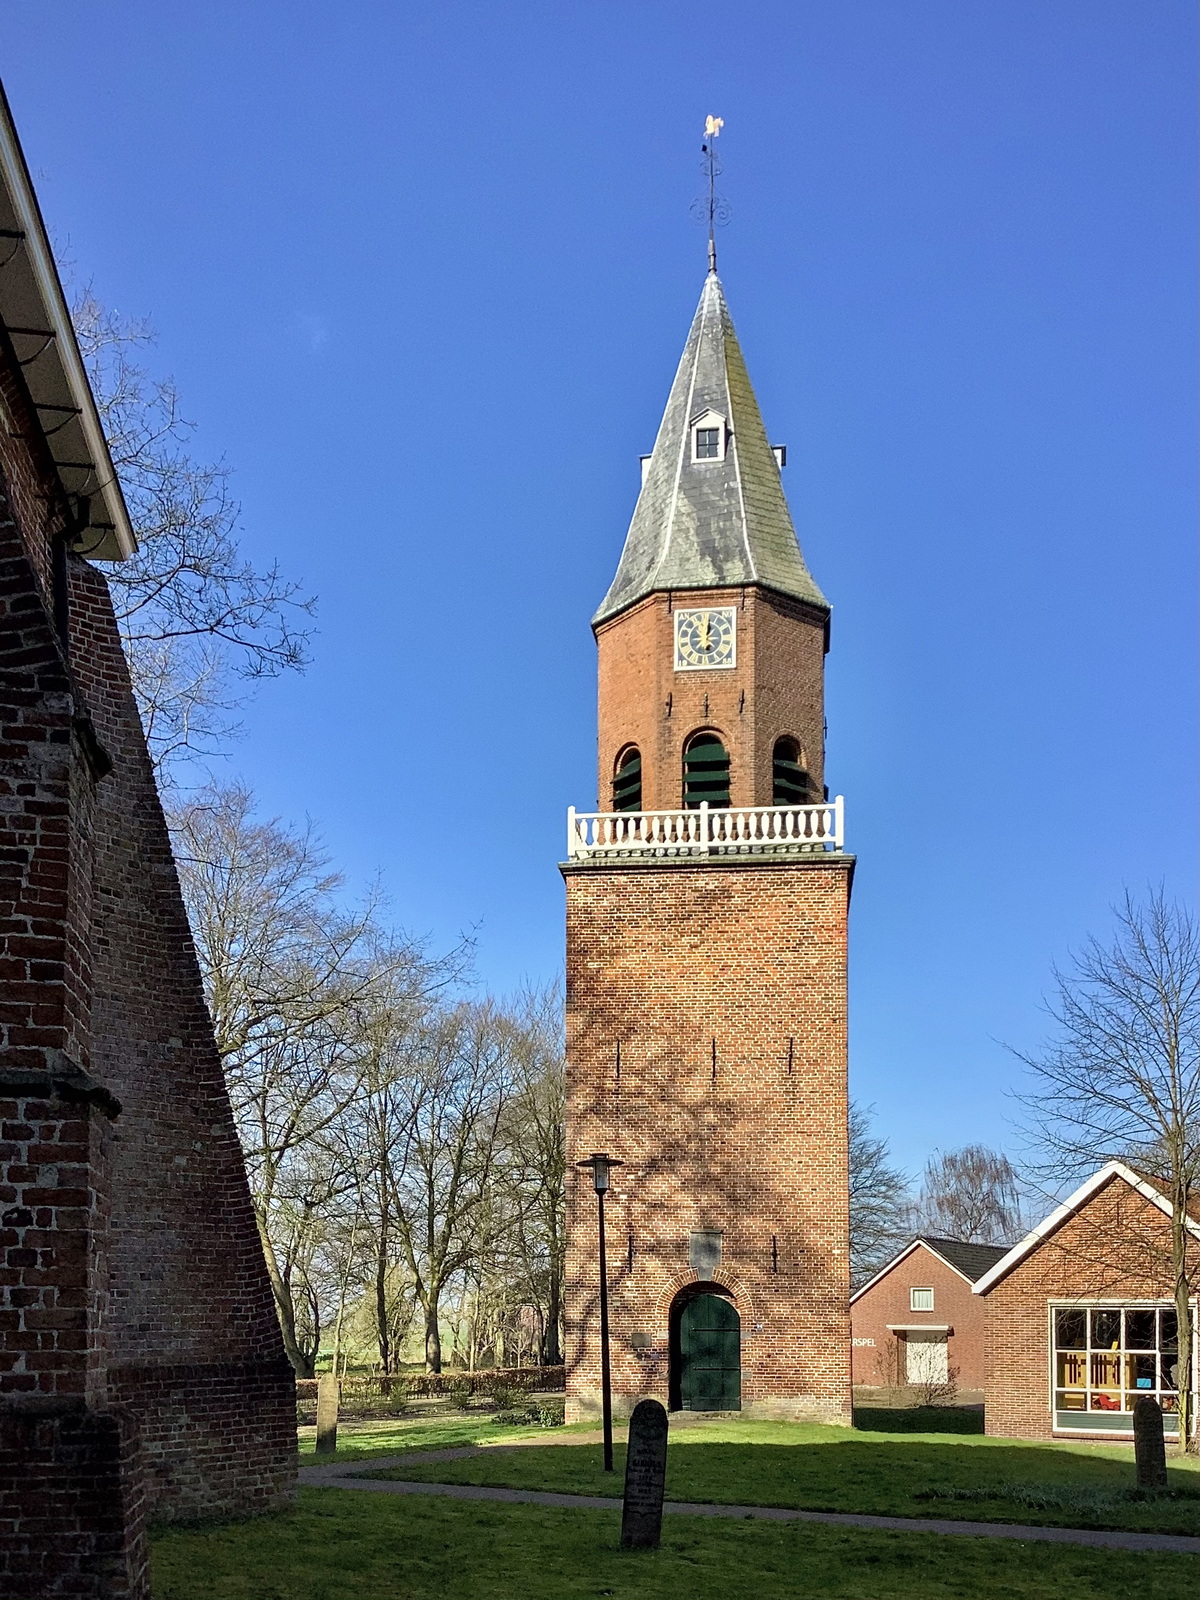 De vrijstaande toren van de Magnuskerk. Foto: ©Jur Kuipers.